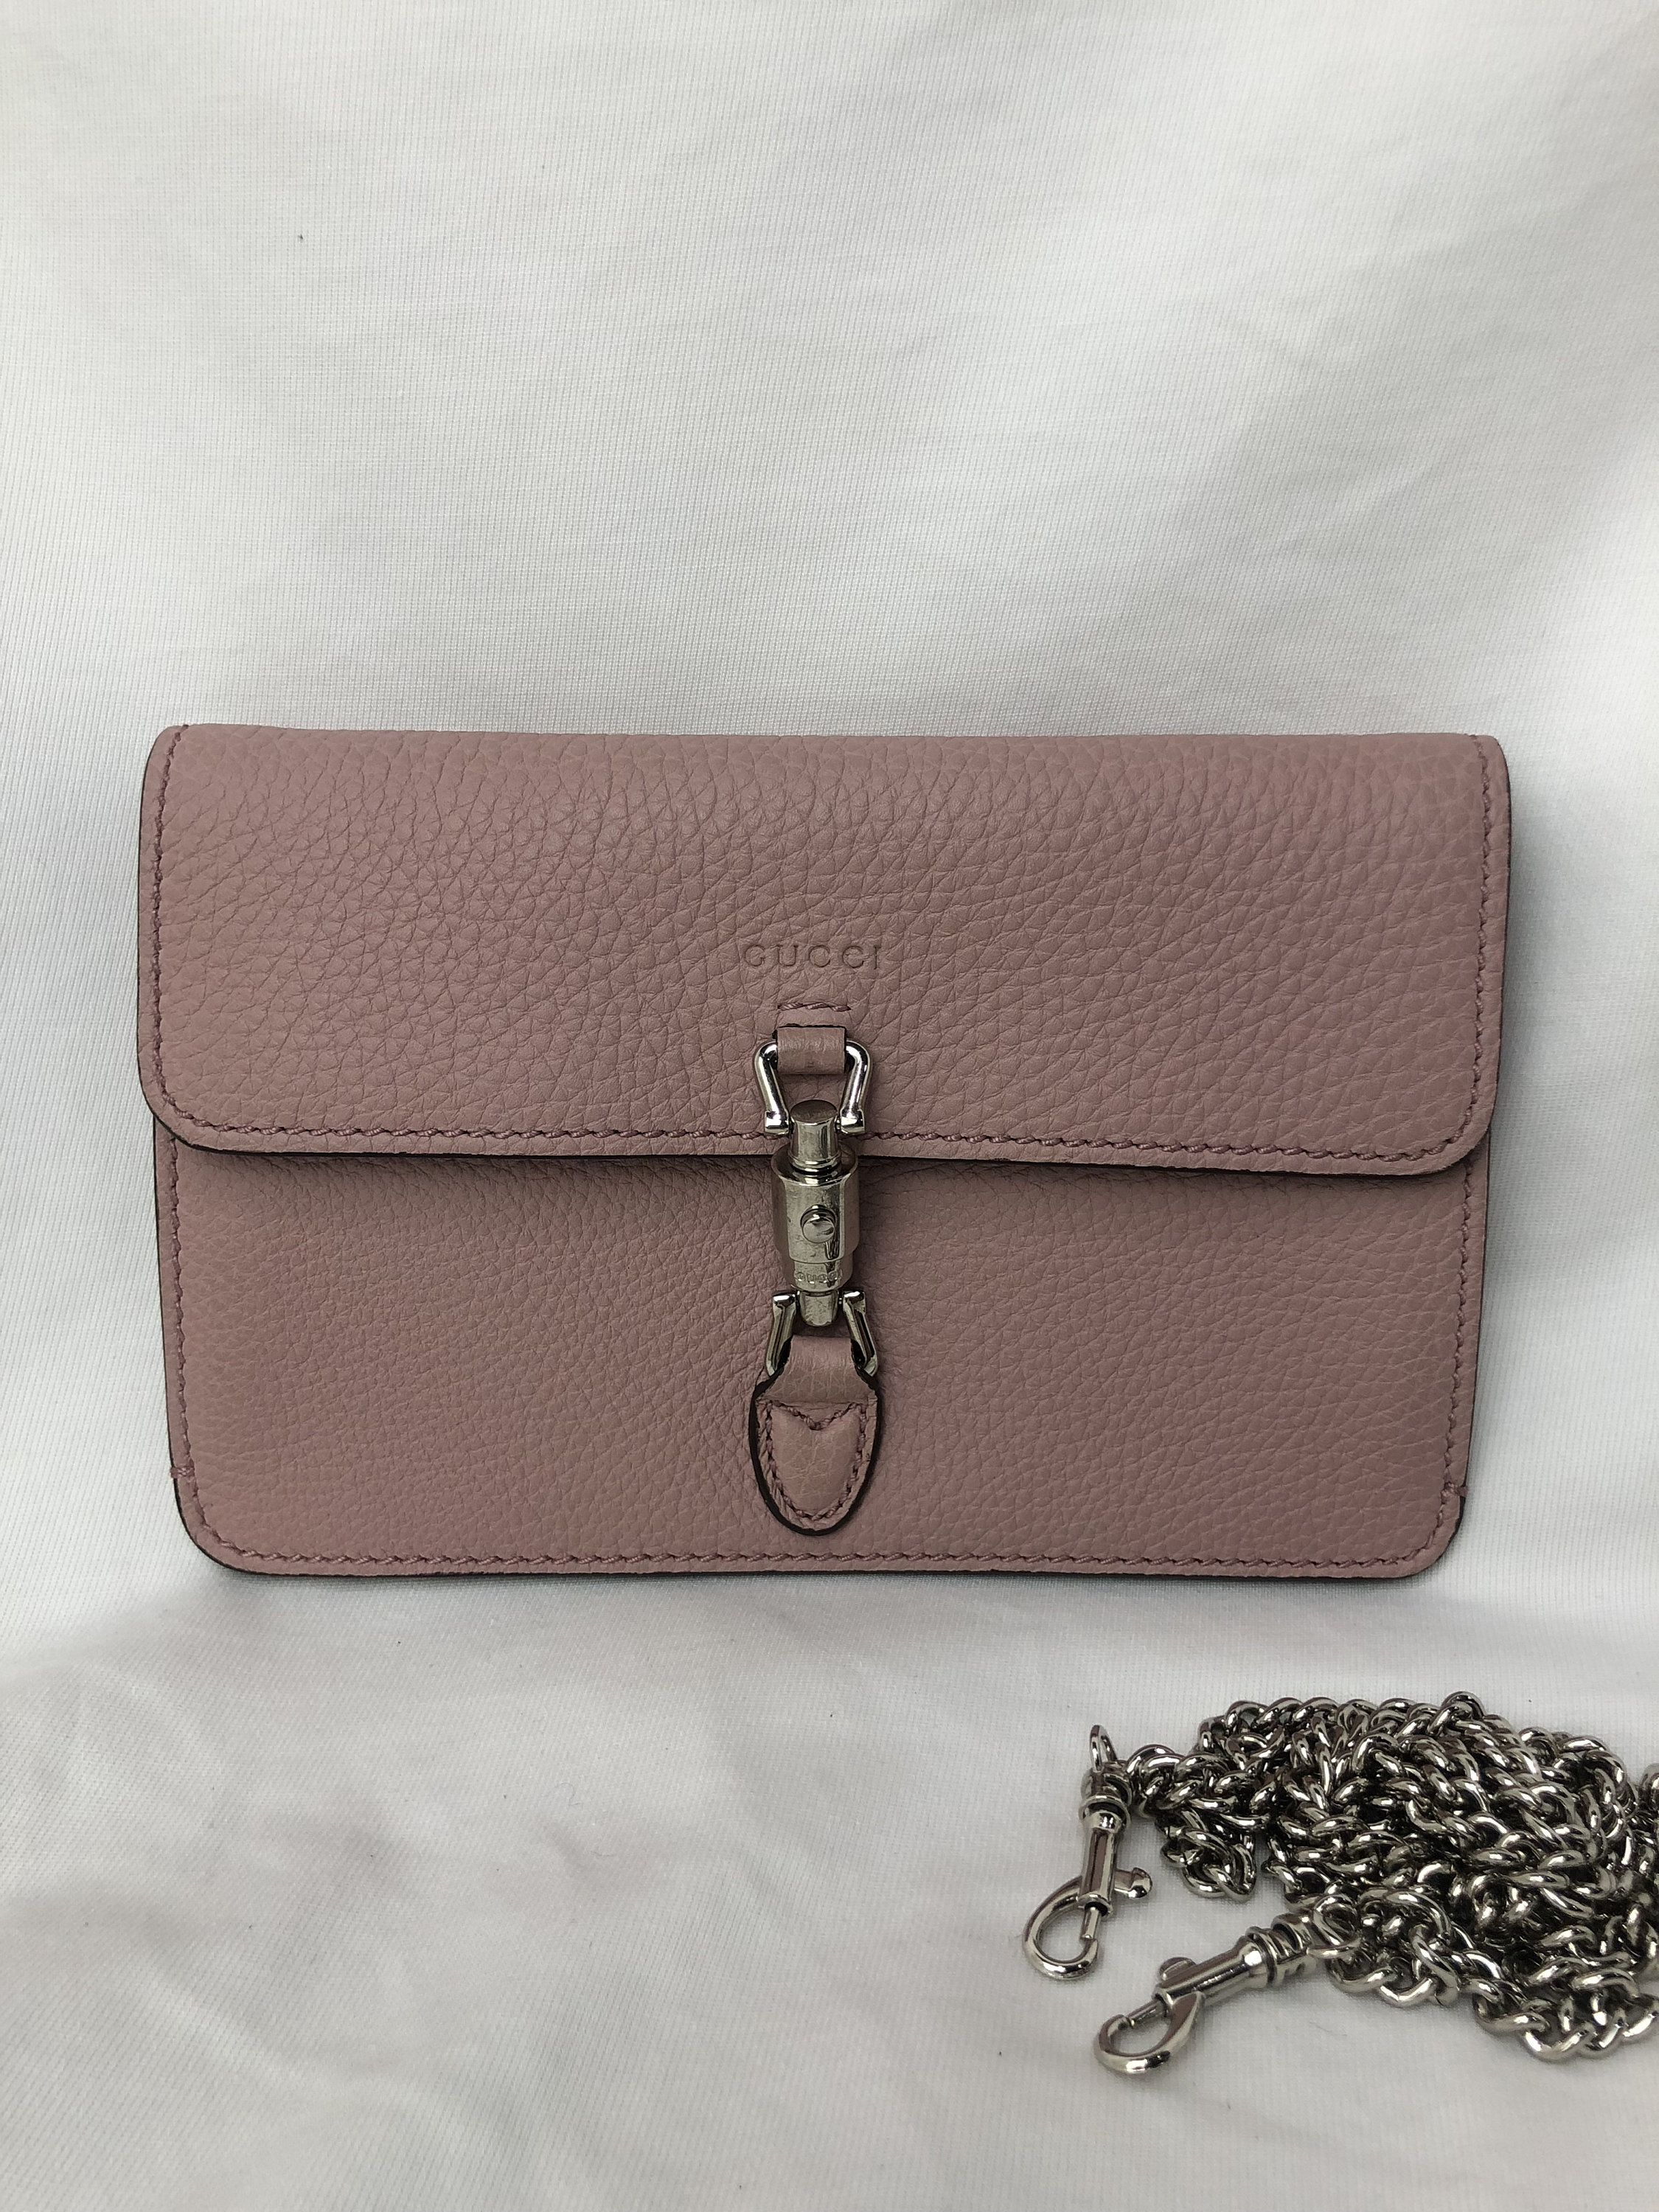 Pink Prada Mini Micro Bag Initial Review - What's in my bag? 